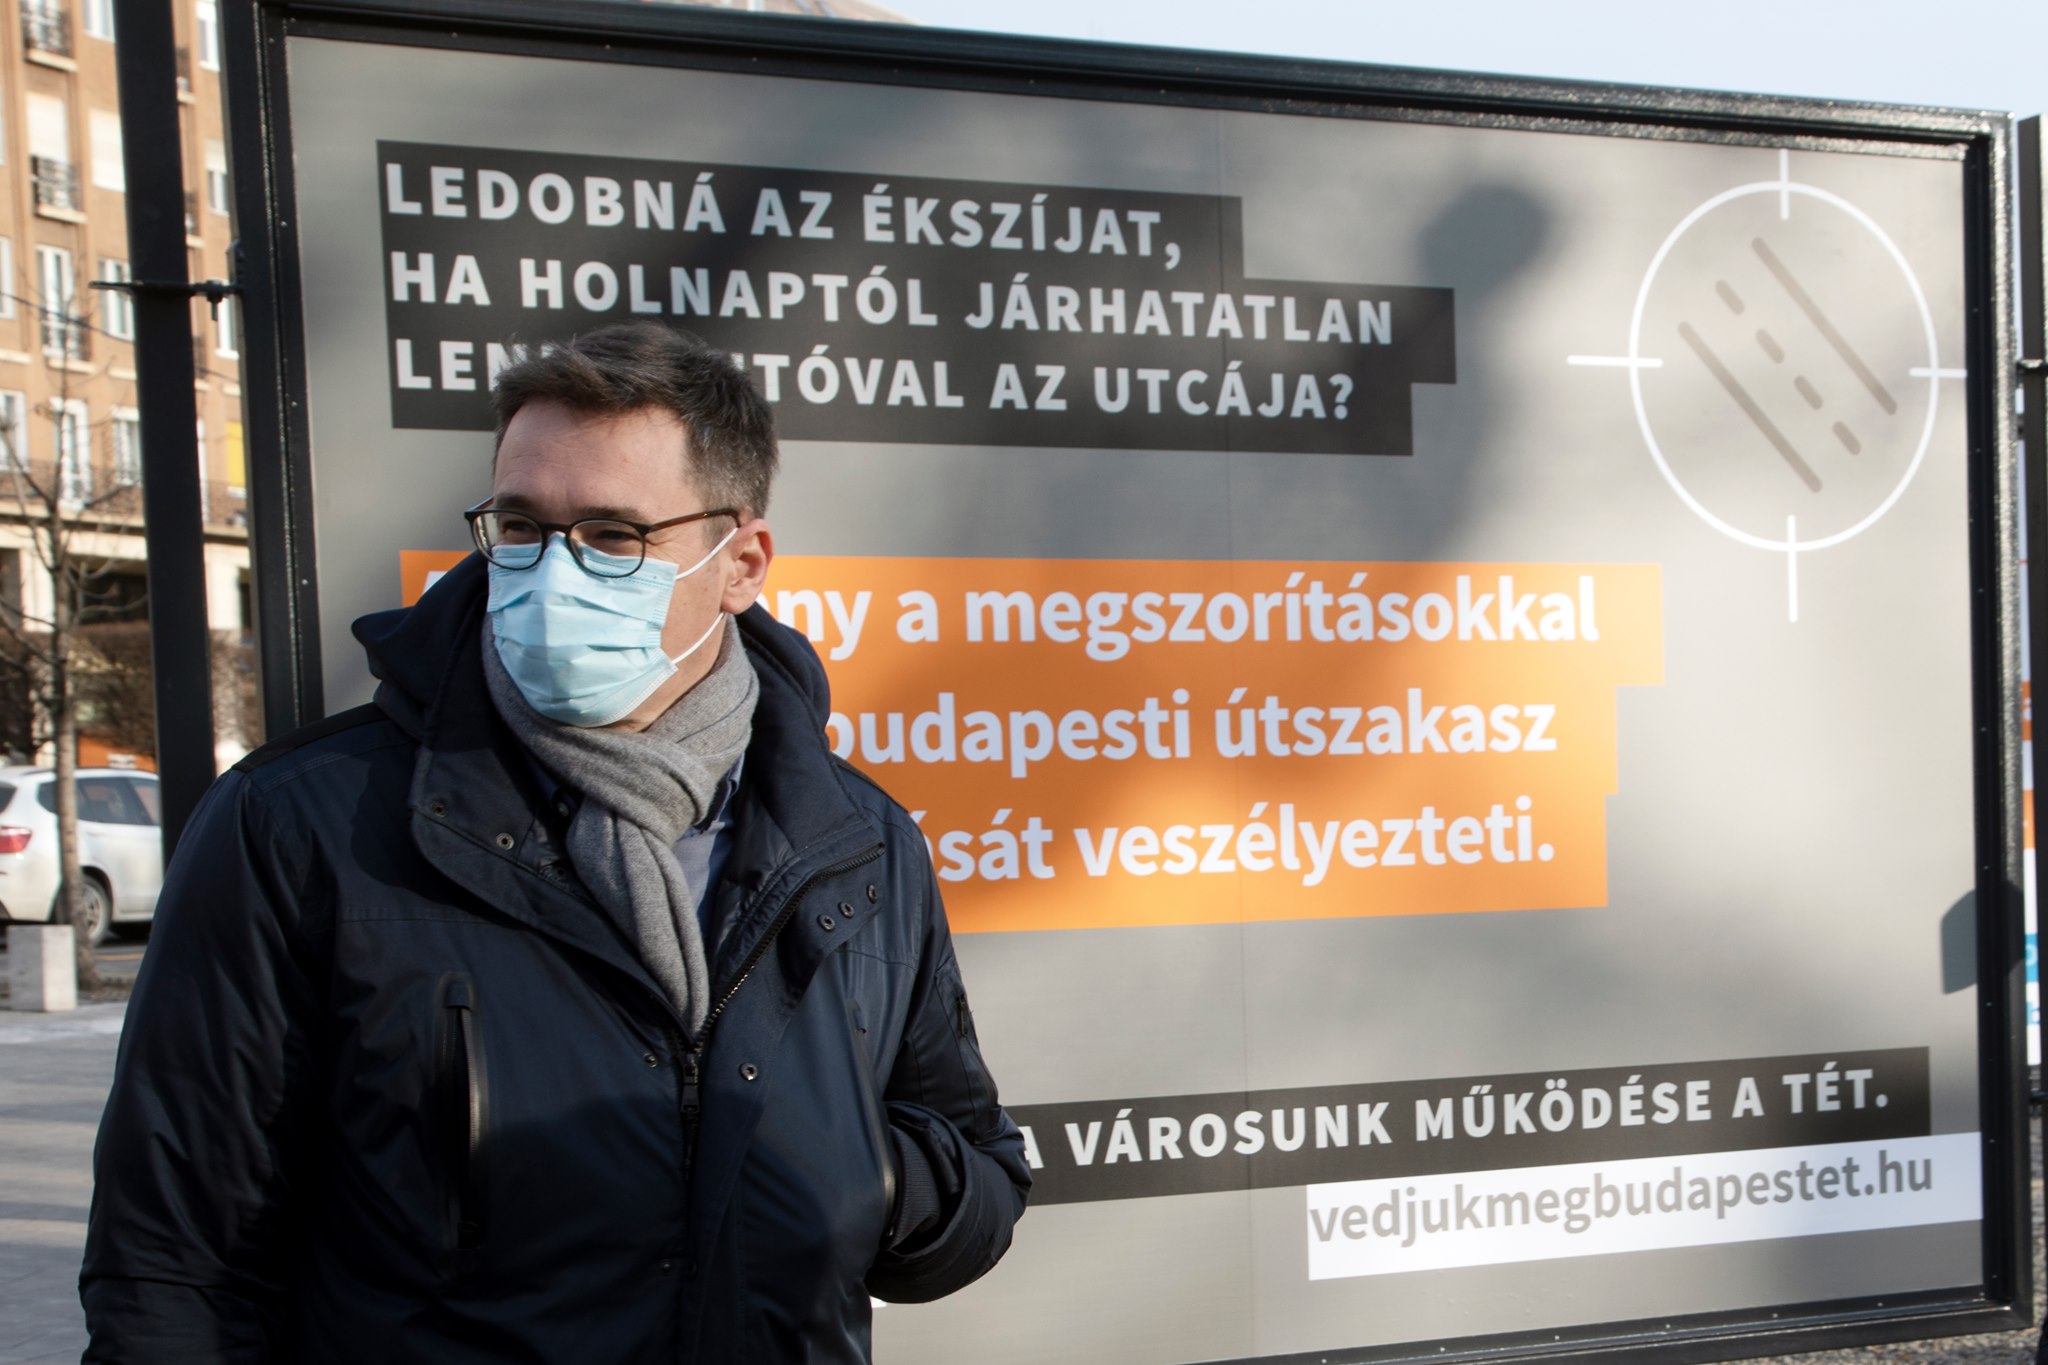 Karácsony: A járvány és a válság rombolása mellé zárkózik fel az Orbán-kormány a megszorításaival